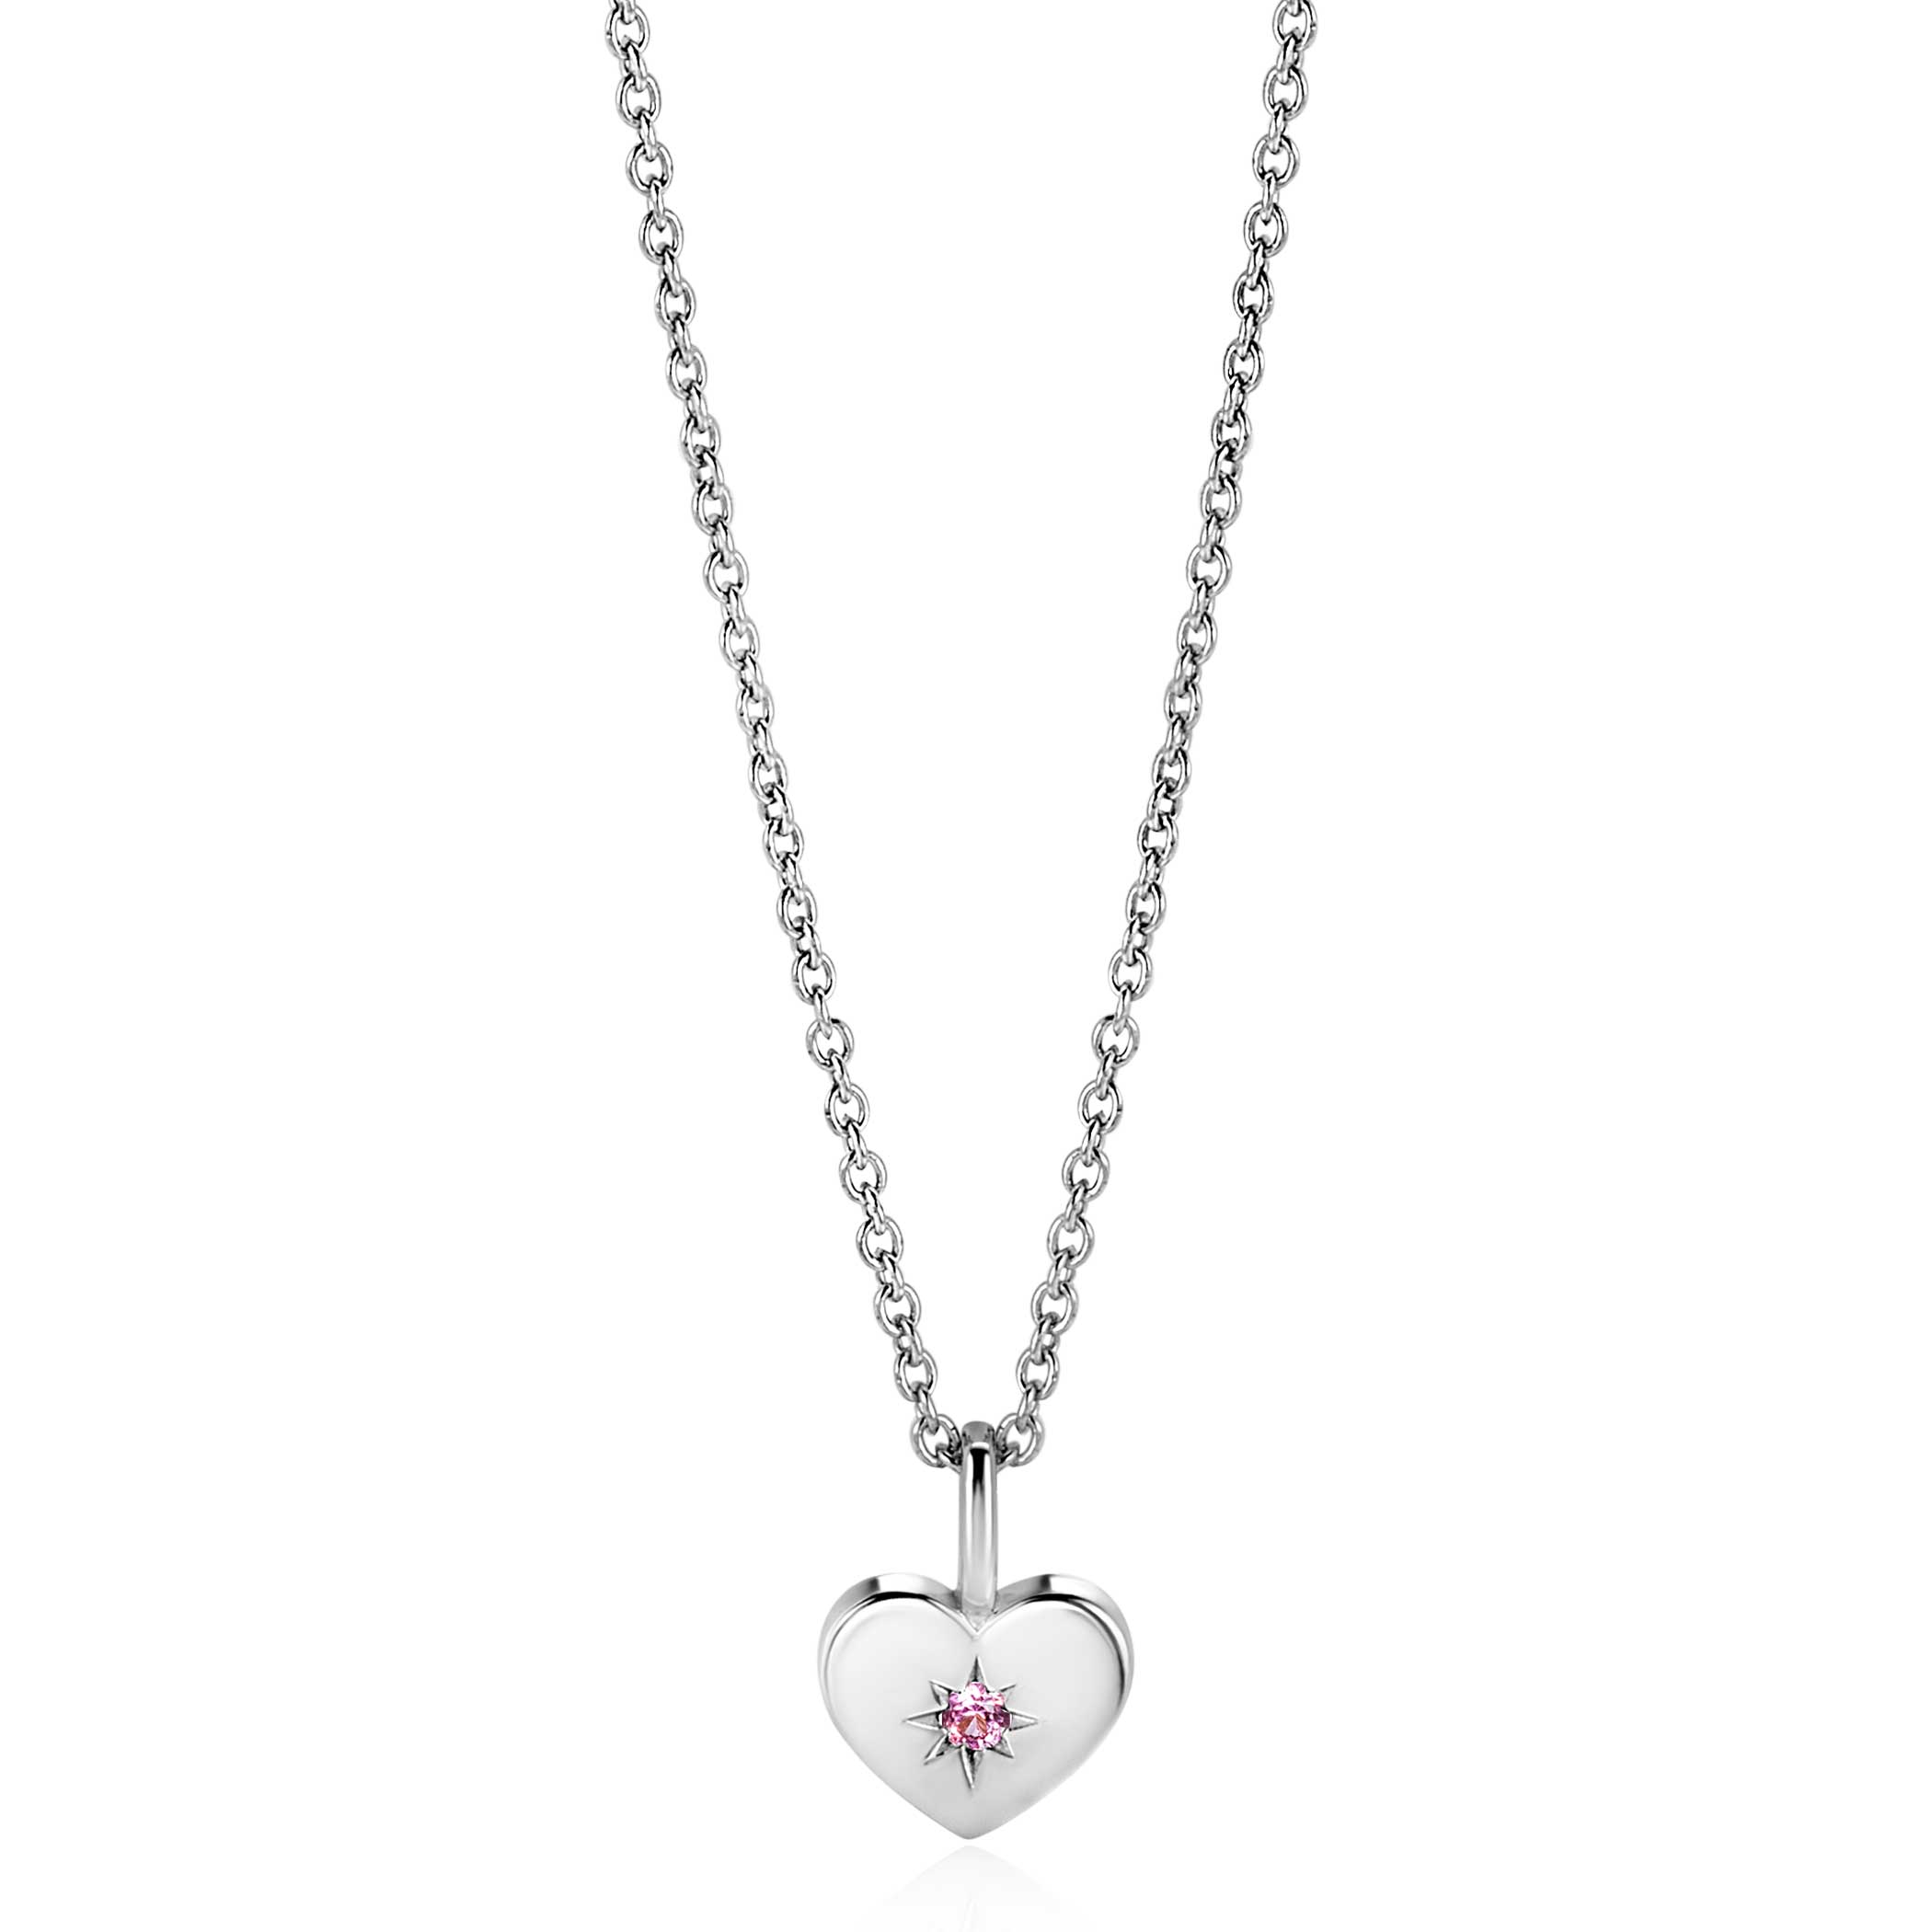 OKTOBER hanger 12mm zilveren hart geboortesteen roze rozenkwarts zirconia (zonder collier)